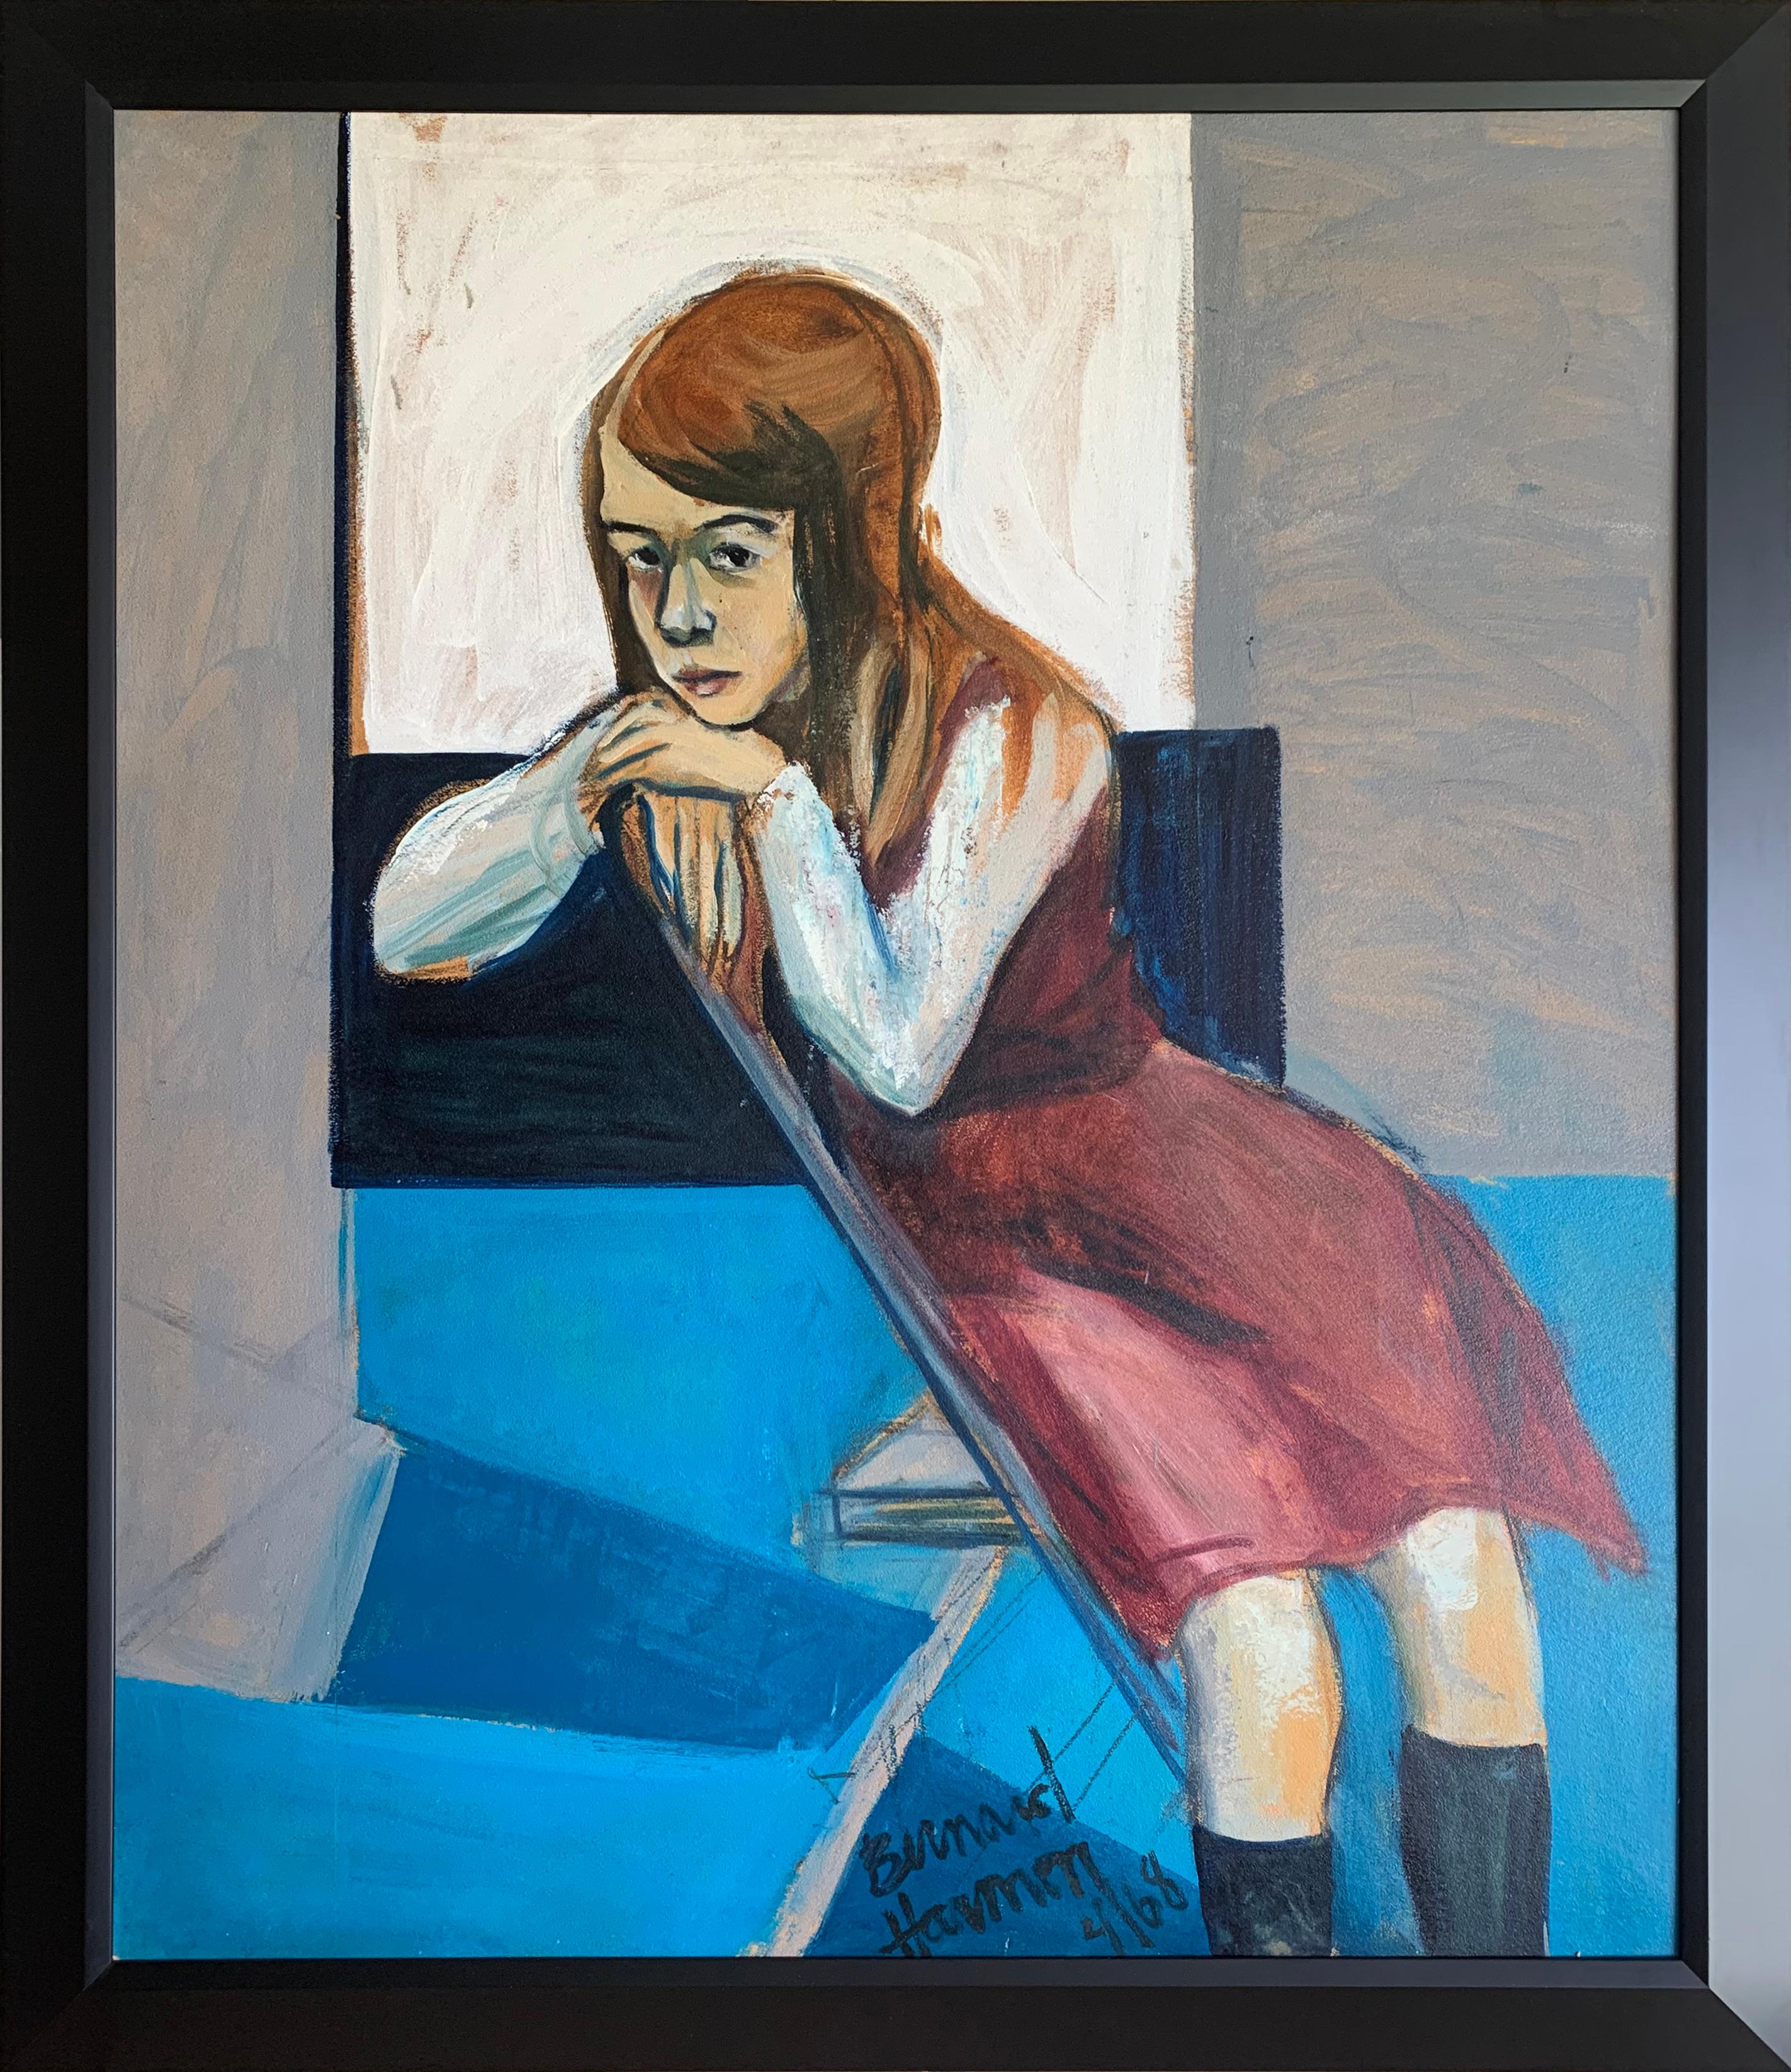 School Girl, Expressionistisches Porträt des Künstlers aus Philadelphia – Painting von Bernard Harmon